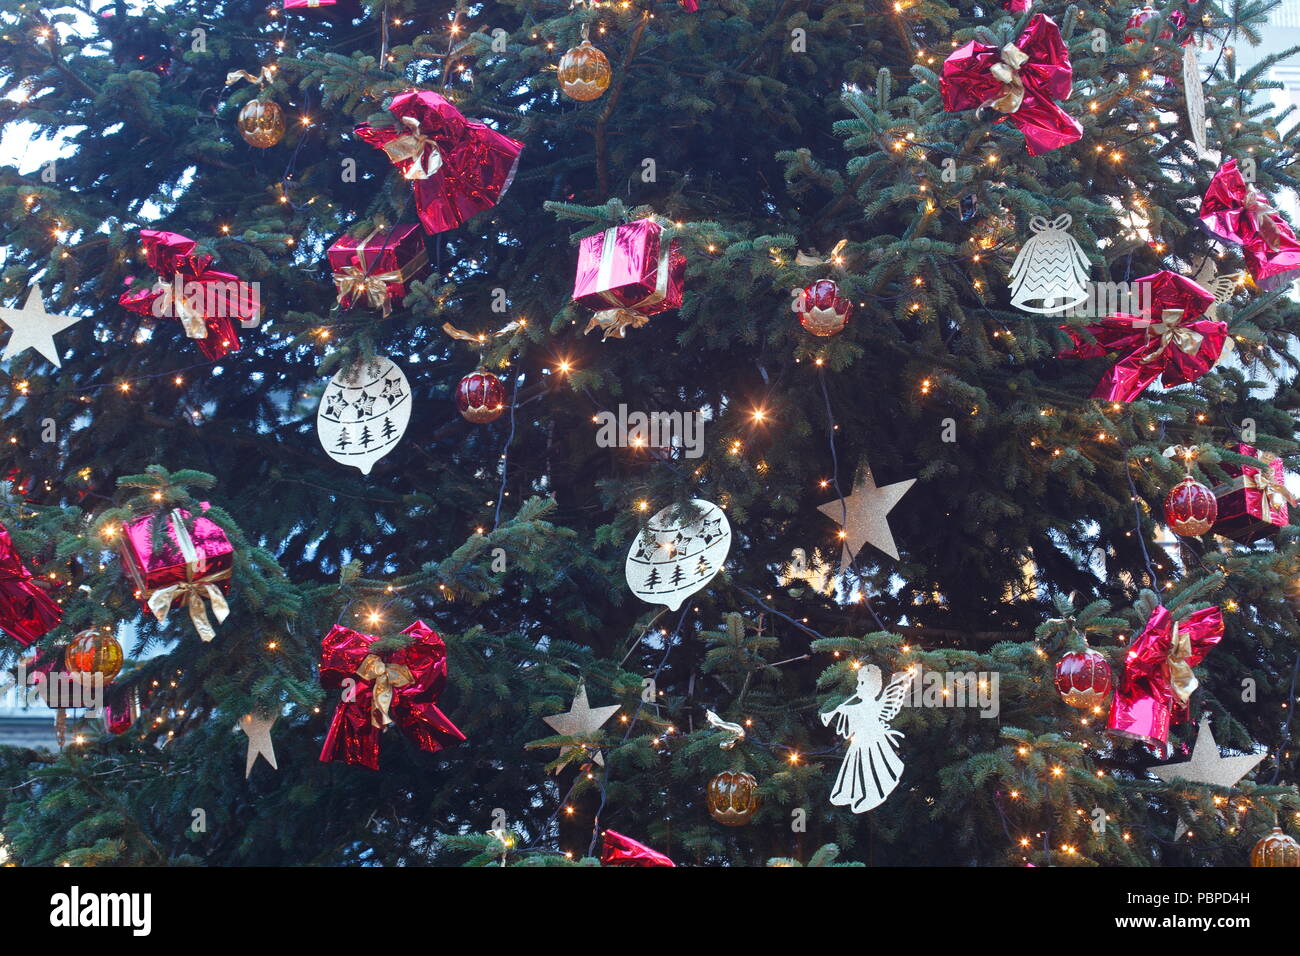 Decorazione di natale in un abete al crepuscolo, Brema, Germania, Europa mi Weihnachtsdekoration in einem Tannenbaum bei Abenddämmerung, Brema, Deutschla Foto Stock